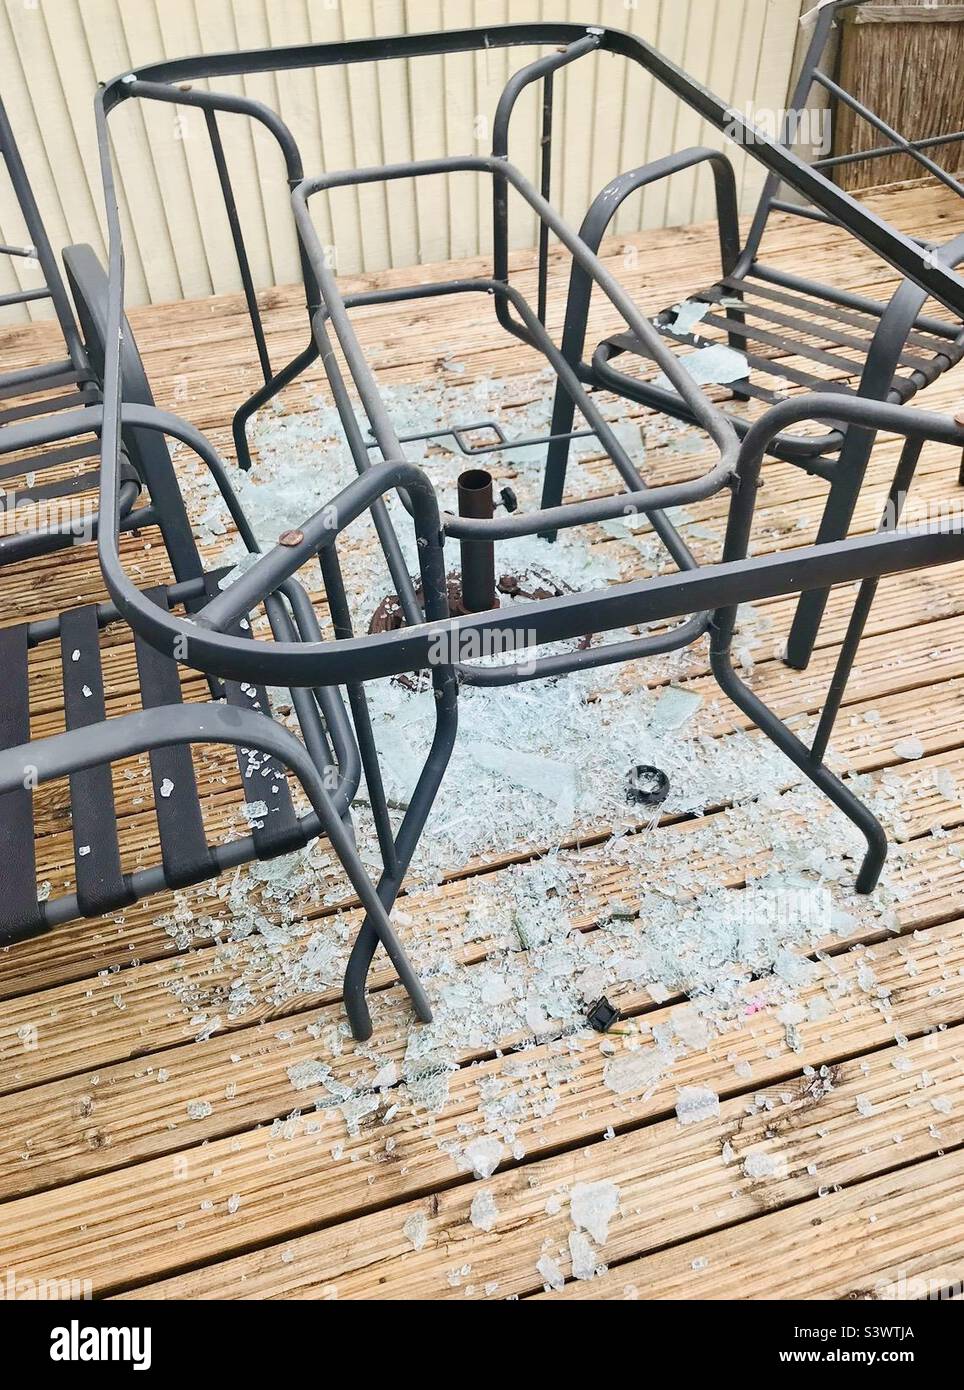 Ops! Il tavolo da giardino in vetro frantumato subito dopo il vento ha fatto esplodere il ombrellone del giardino dalla sua base e giù sul tavolo. Foto Stock